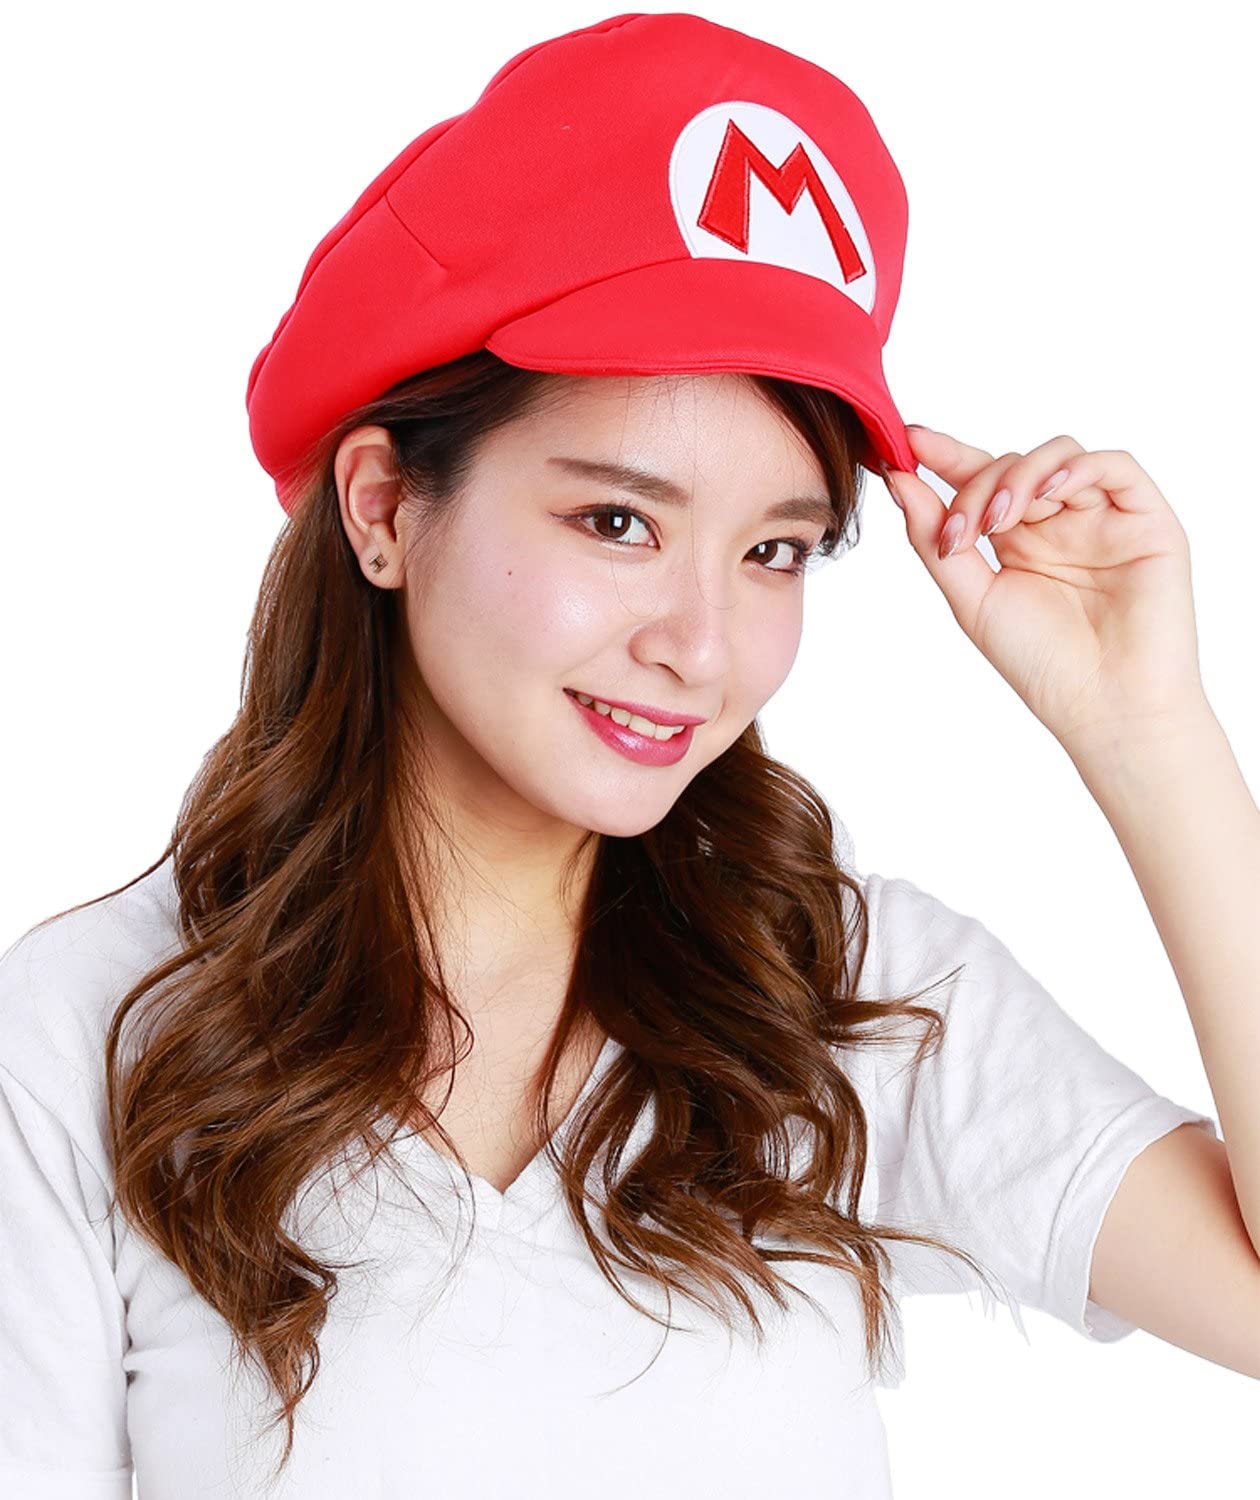 Anime Costume Hat: Super Mario